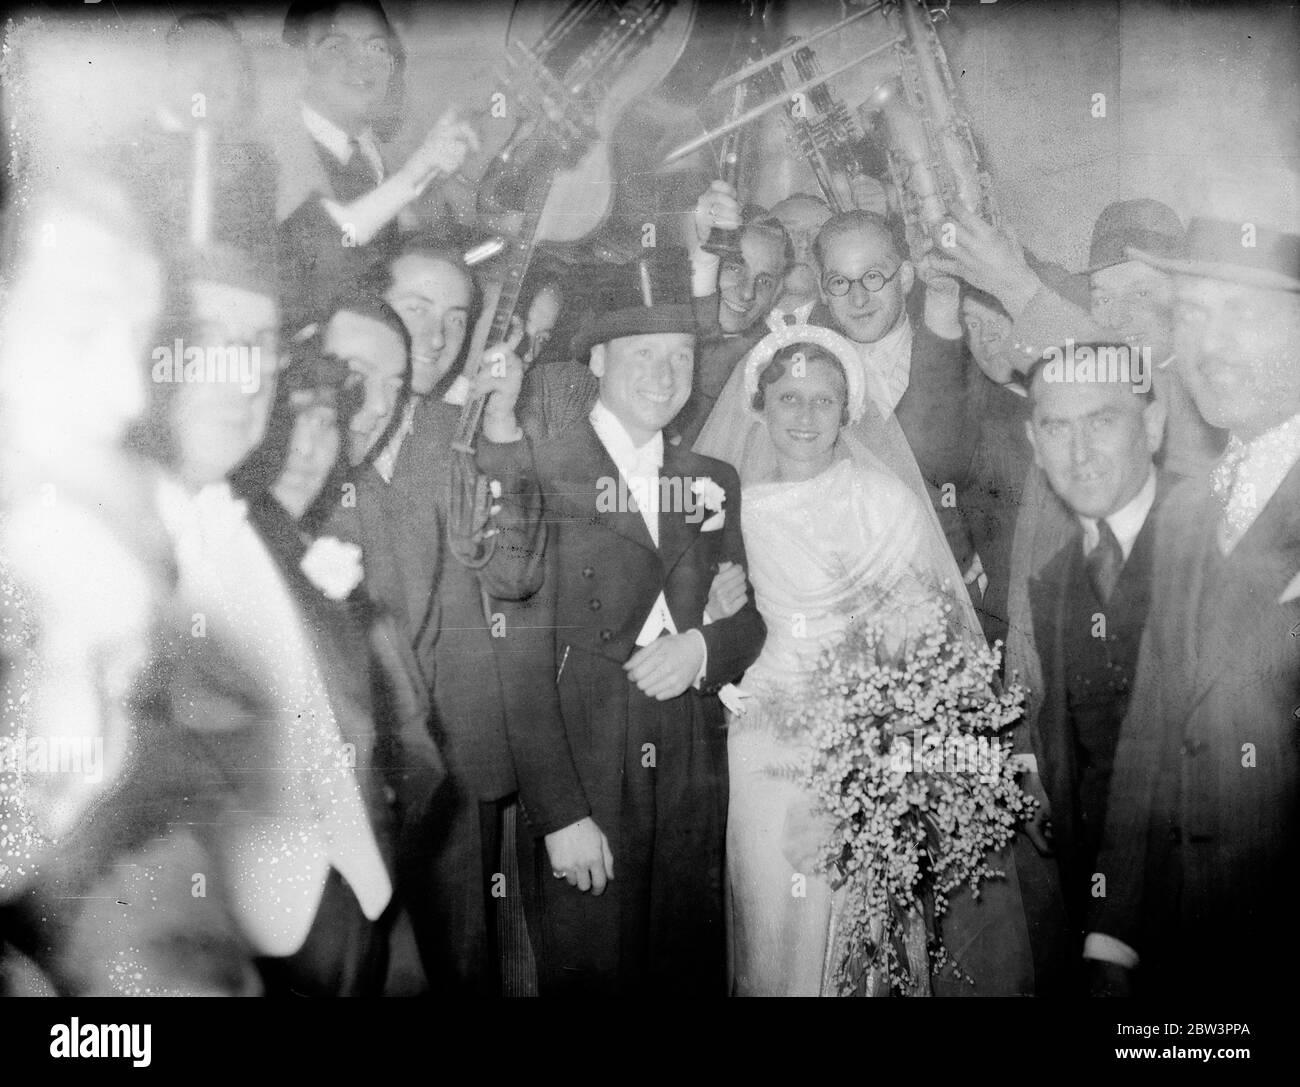 Musikalische Hochzeit für Raymond, berühmte Band Führer, in London. Kehrte aus Neuseeland zu heiraten. Manuel Raymond heiratete Miss Dolly Sheldon in der Großen Synagoge, St James Place, London. 26. September 1935 Stockfoto